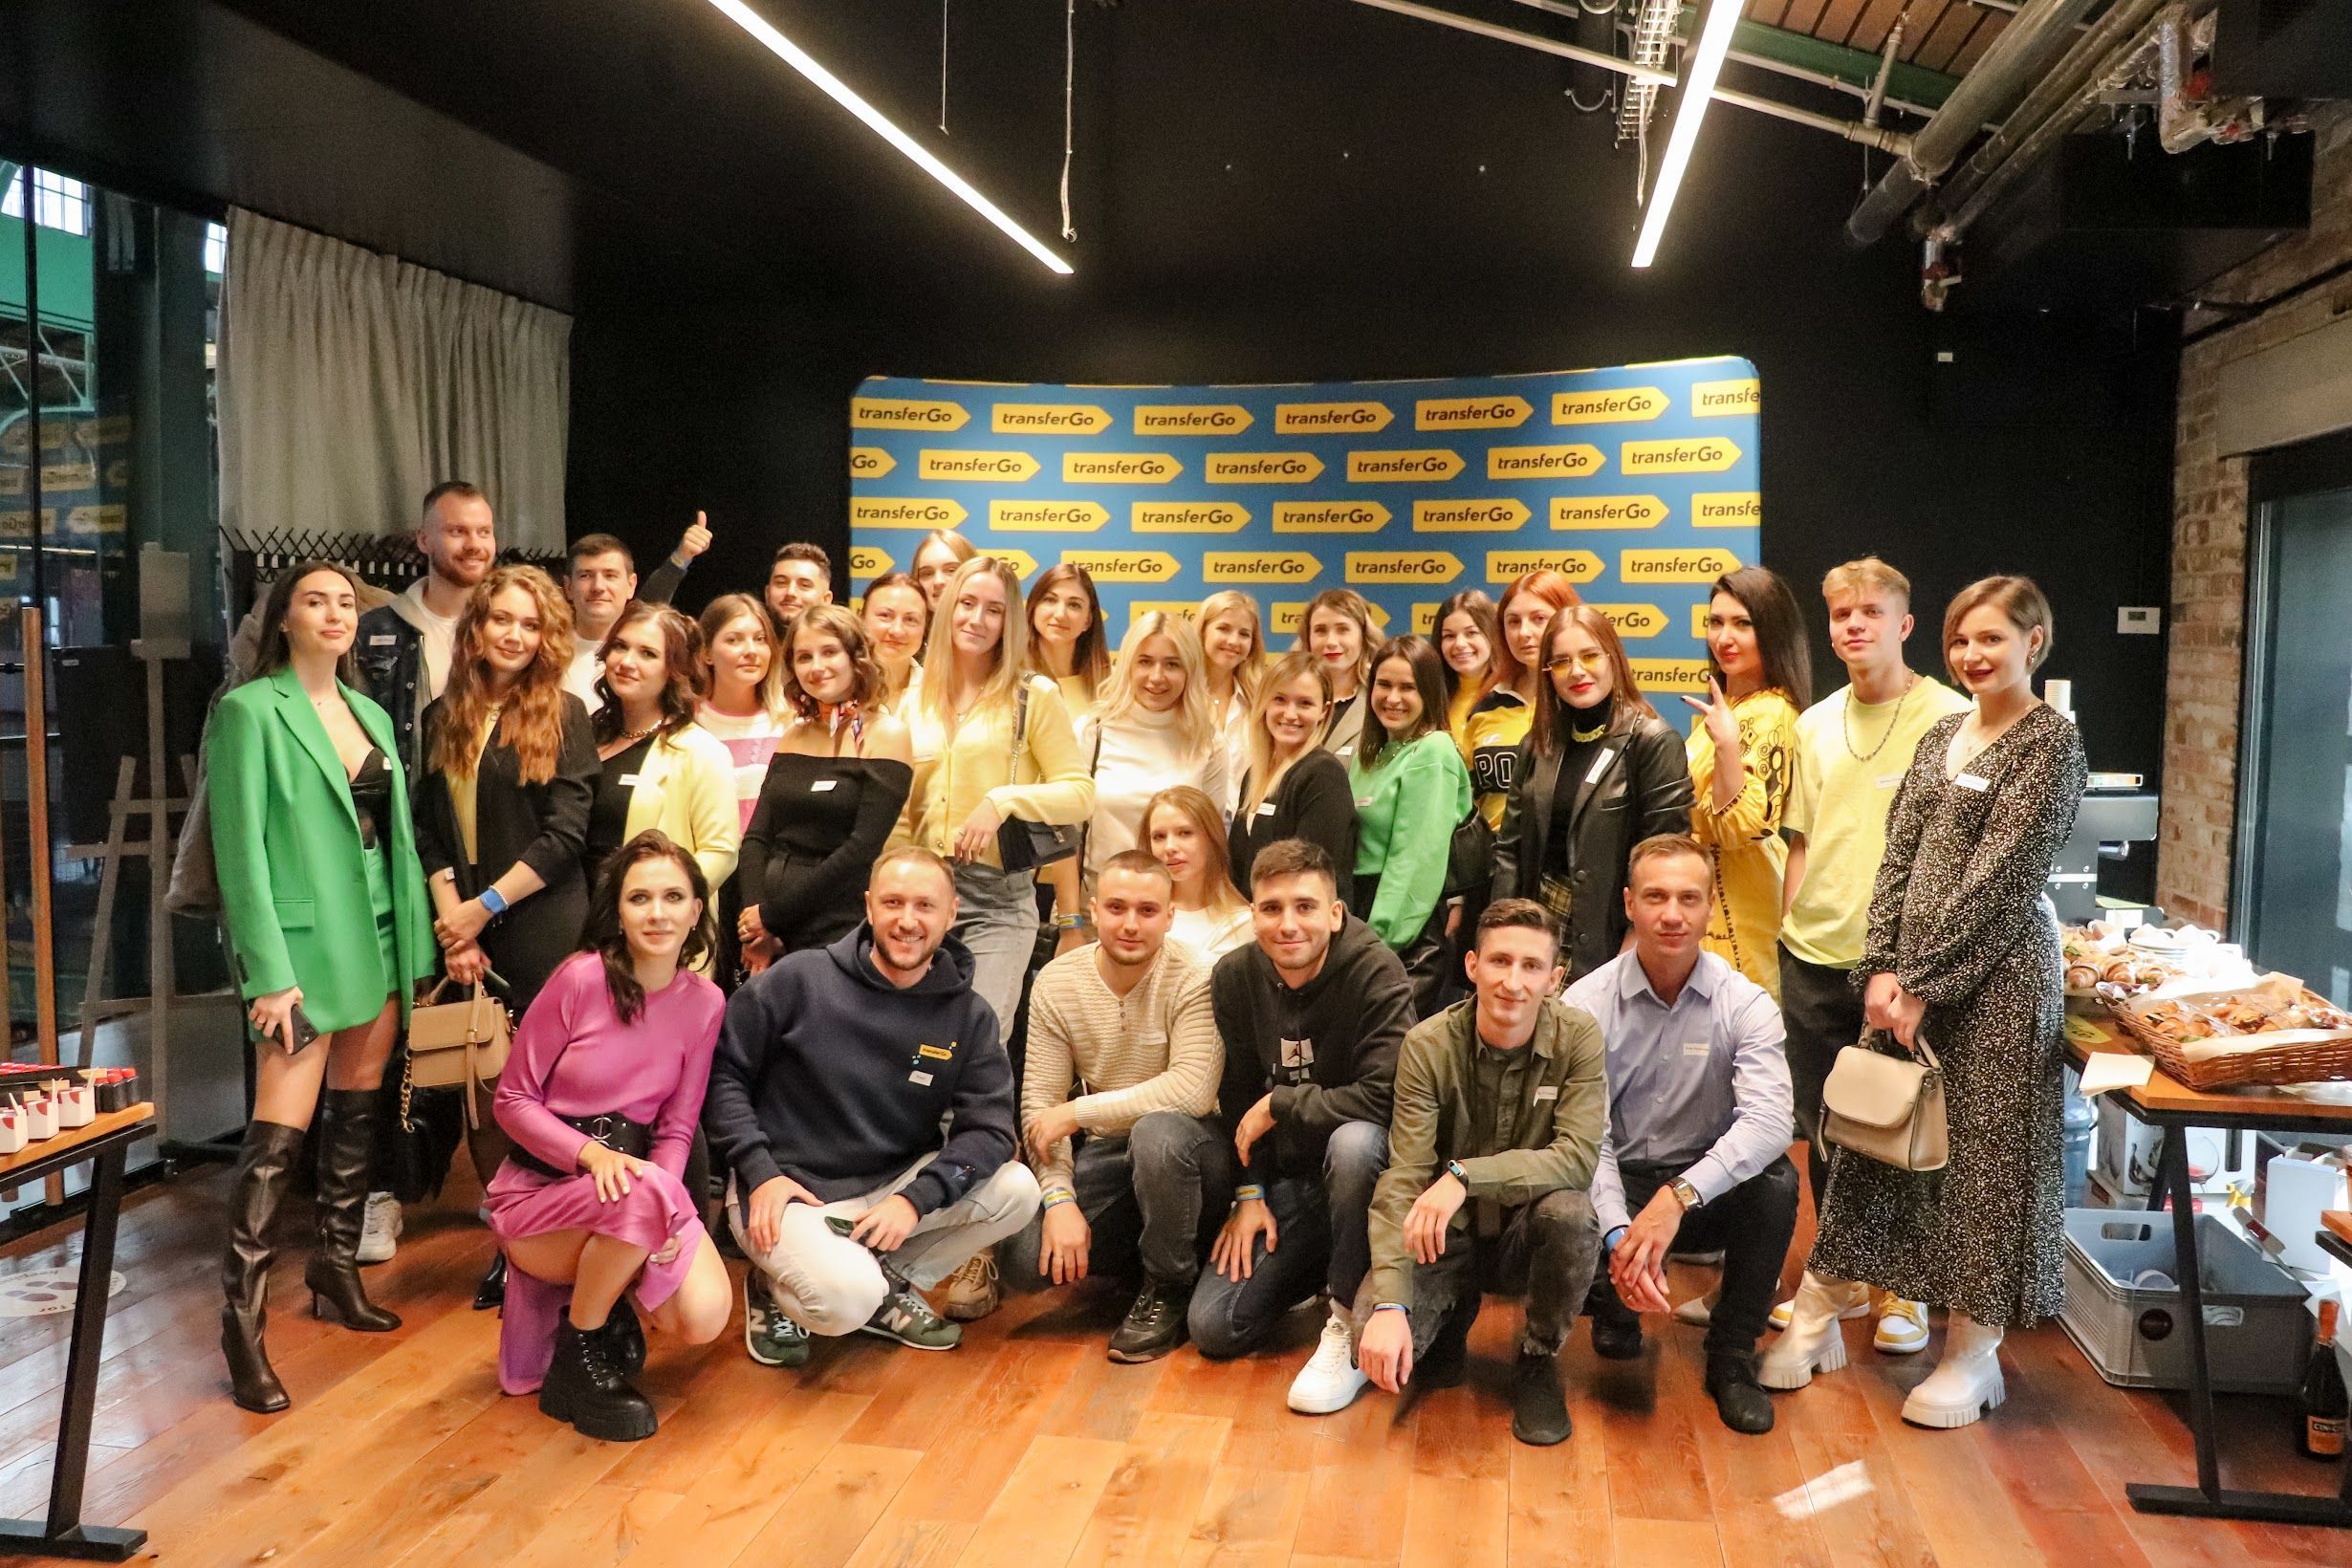 У Польщі відбулася перша тікток-вечірка для українських блогерів від TransferGo: фото та відео - Україна новини - Закордон